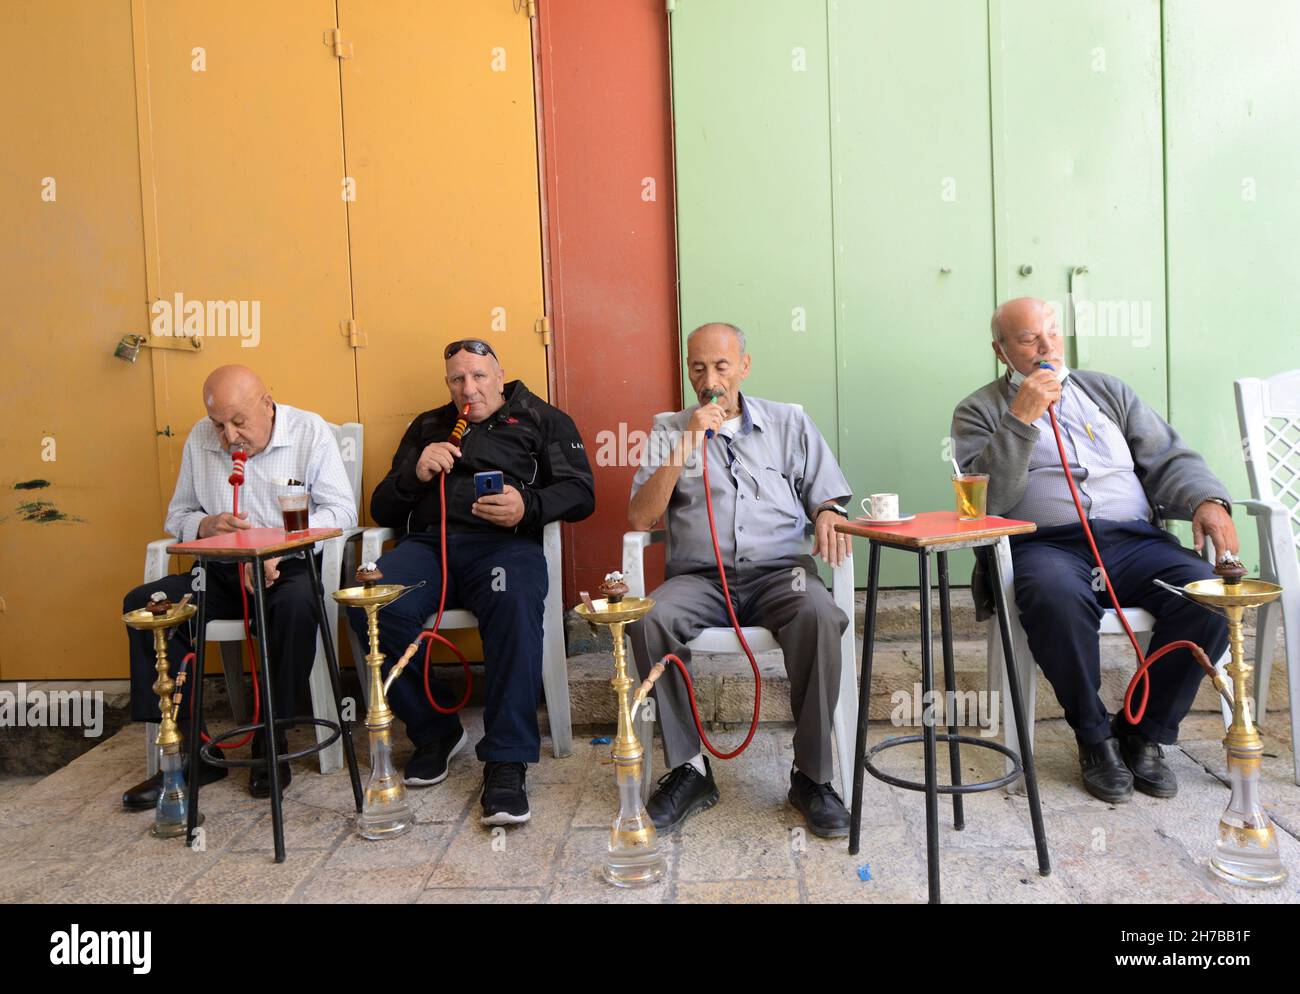 Les hommes fumeurs Nargila palestinienne dans la vieille ville de Jérusalem. Banque D'Images